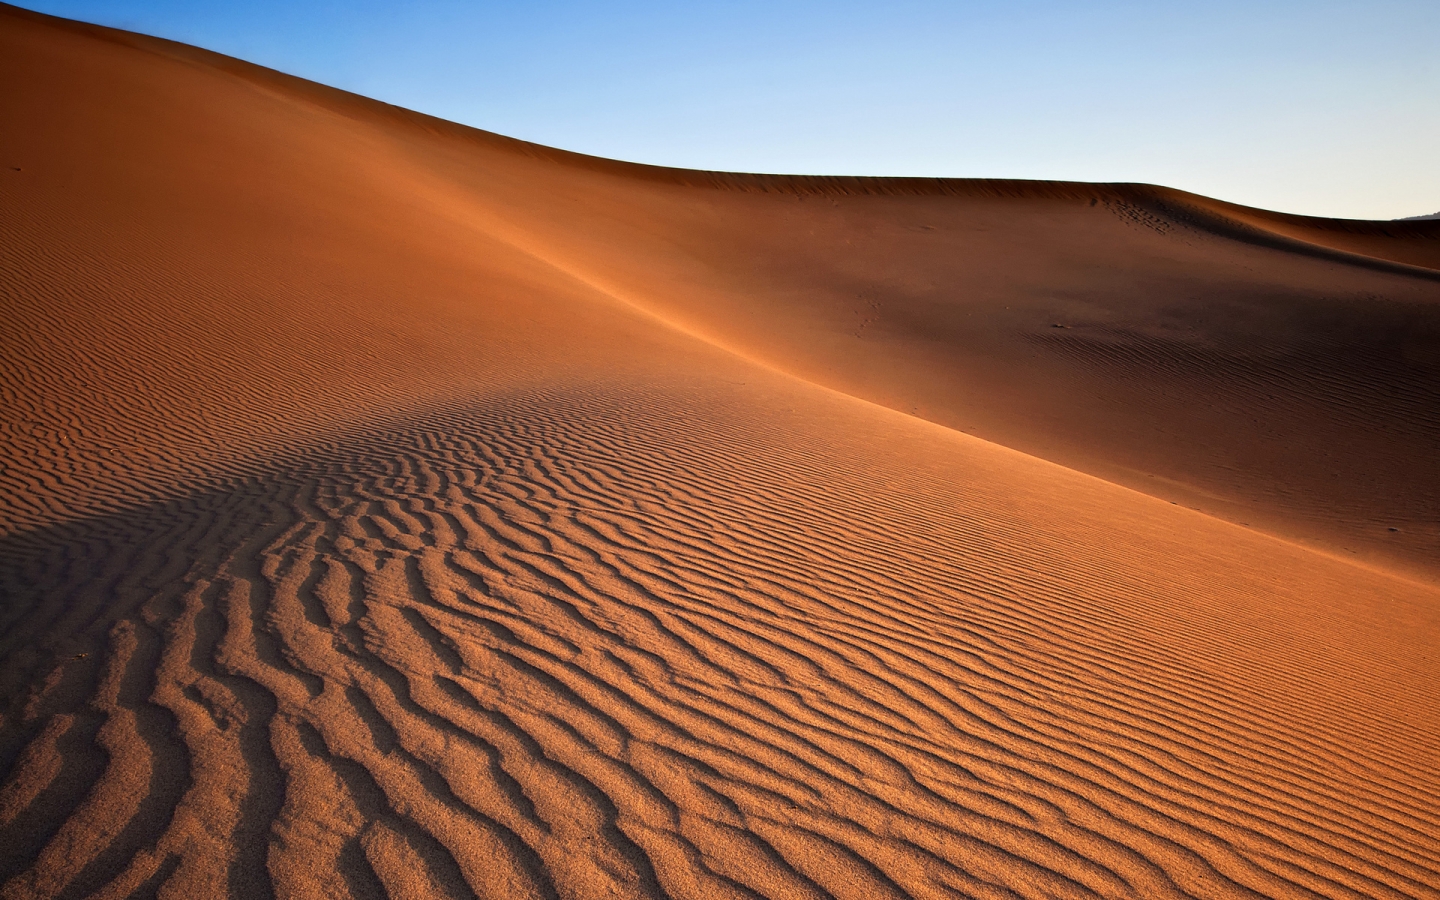 Desert Landscape for 1440 x 900 widescreen resolution